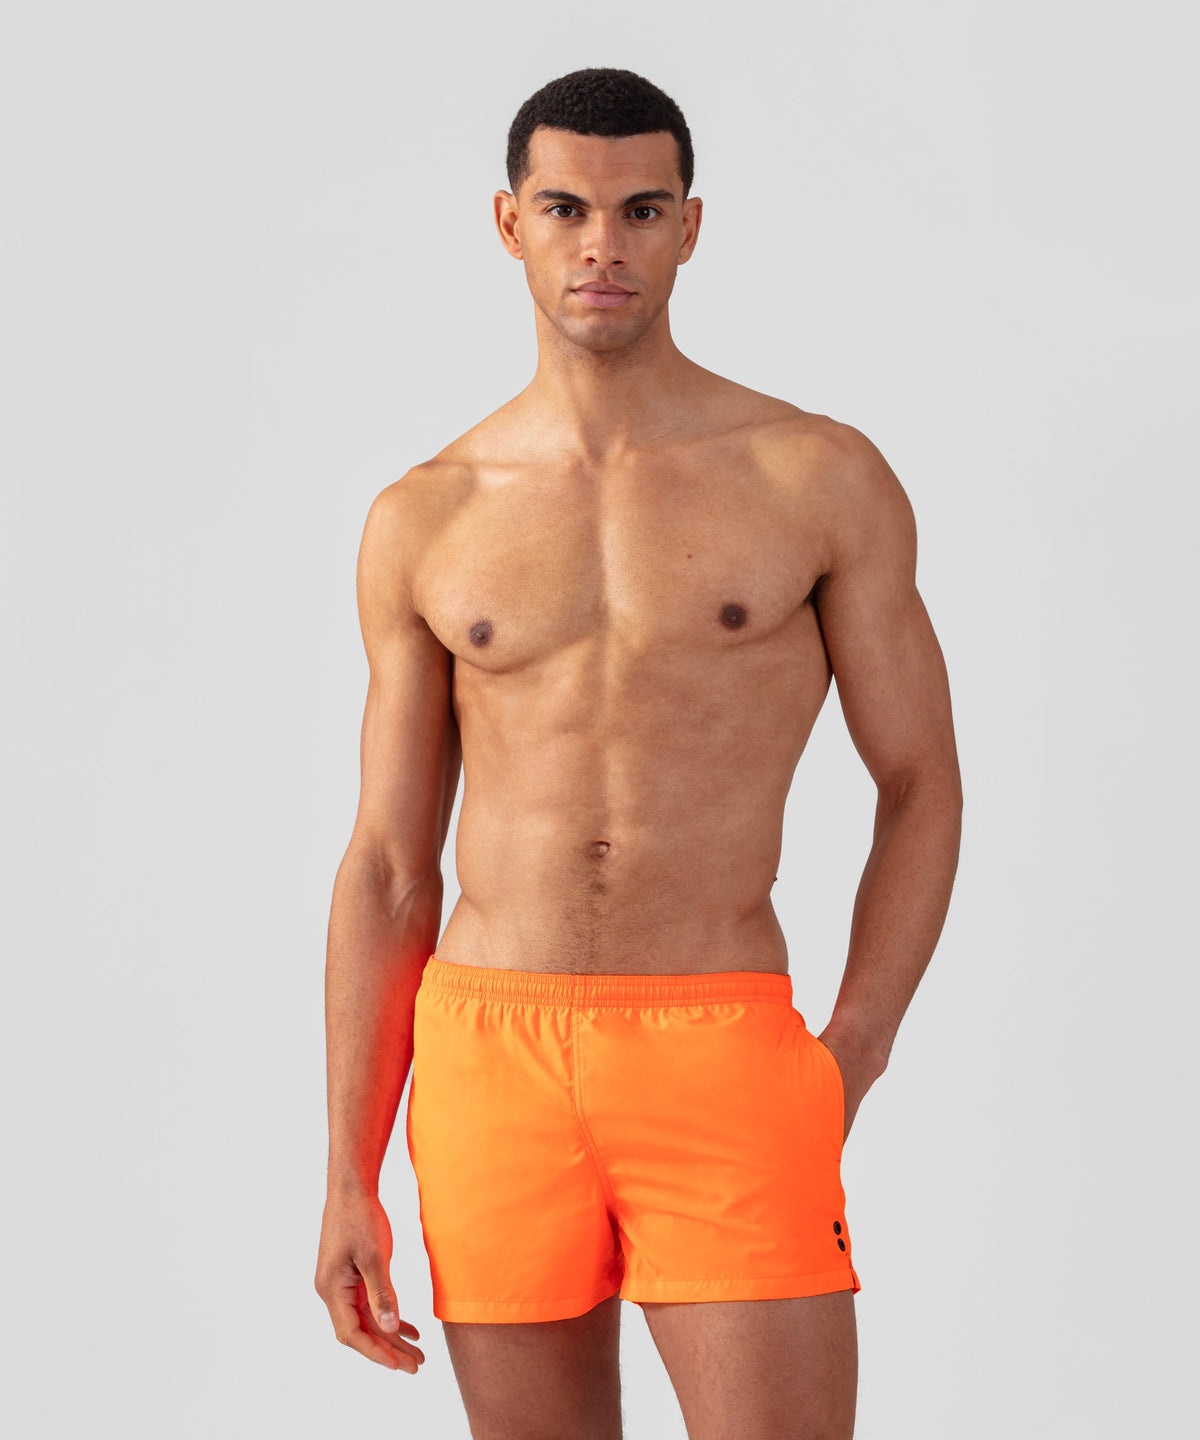 RON DORFF - The new Urban Swim shorts in Sky Blue. #RonDorff #Menswear  #Swimwear #ElliottReeder @elliottreeder @smiggi Find the collection